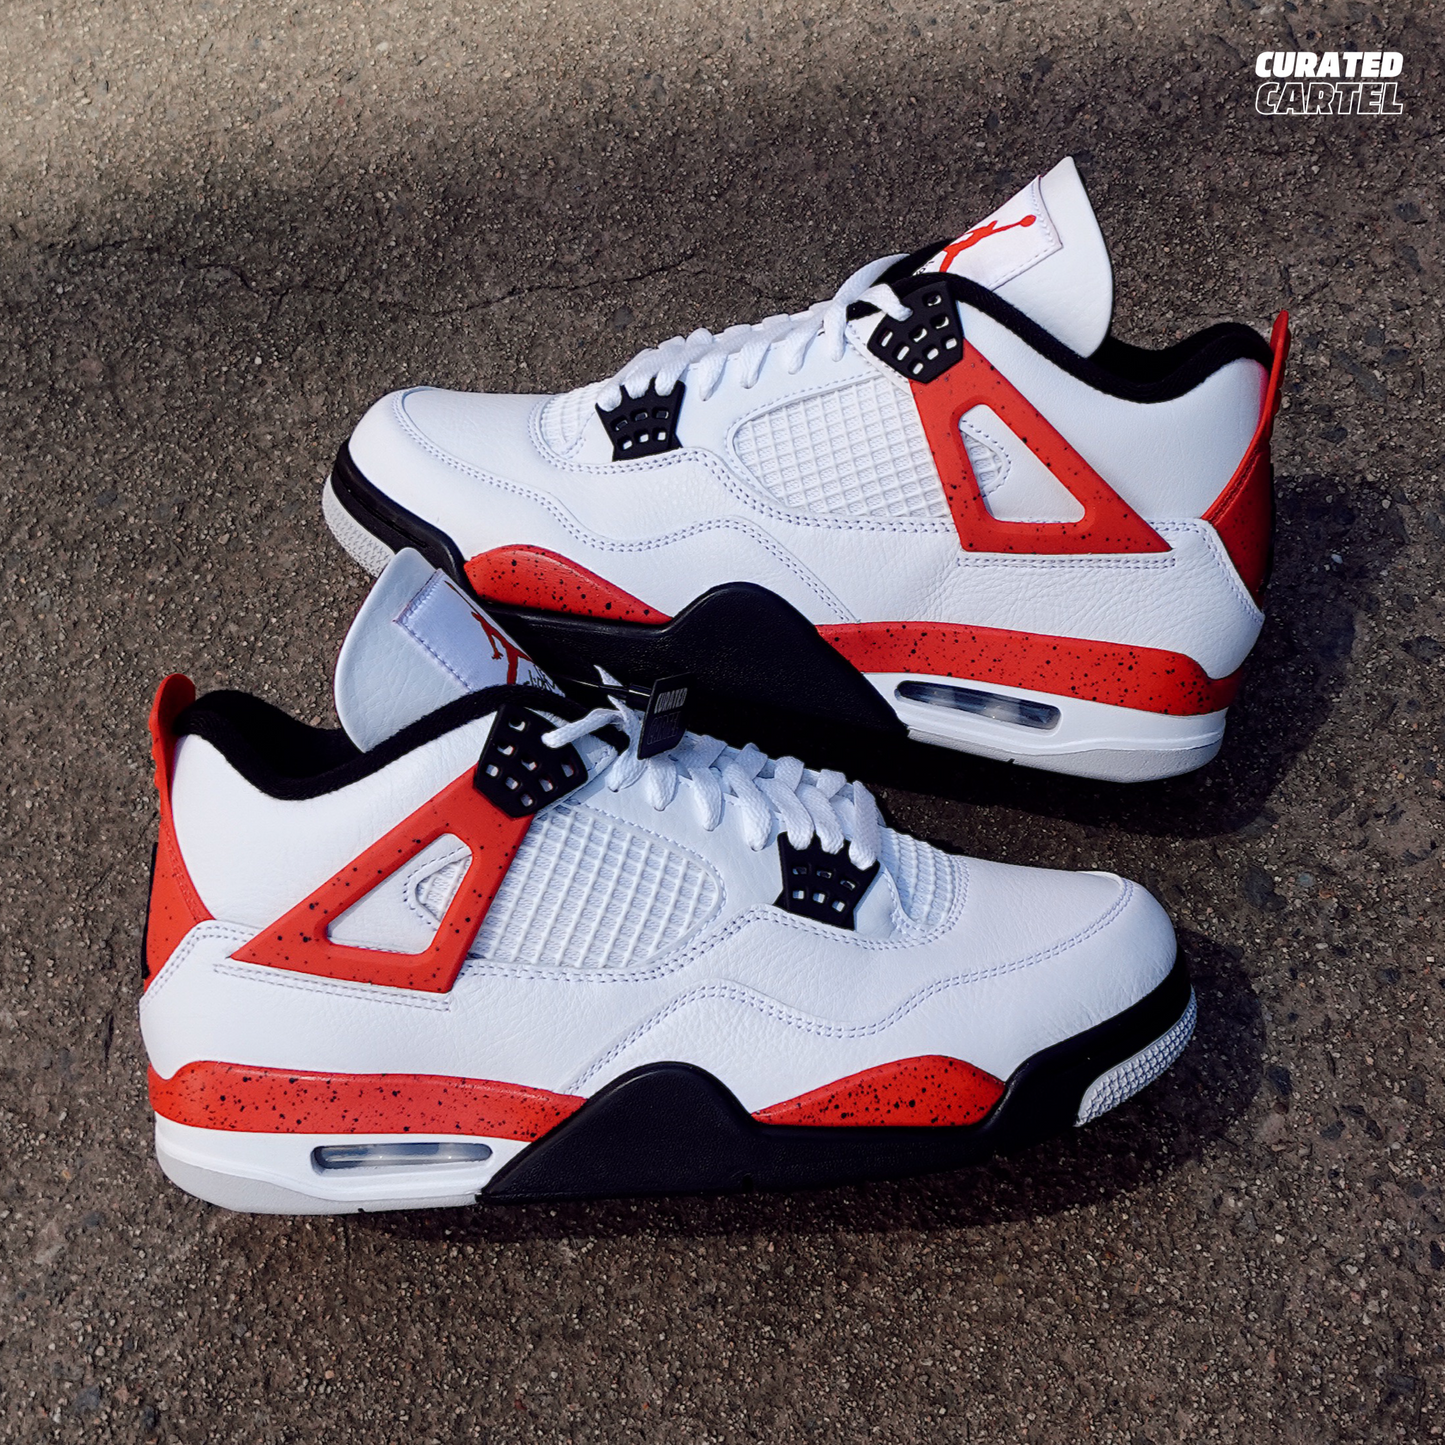 Jordan 4 Retro “Red Cement”